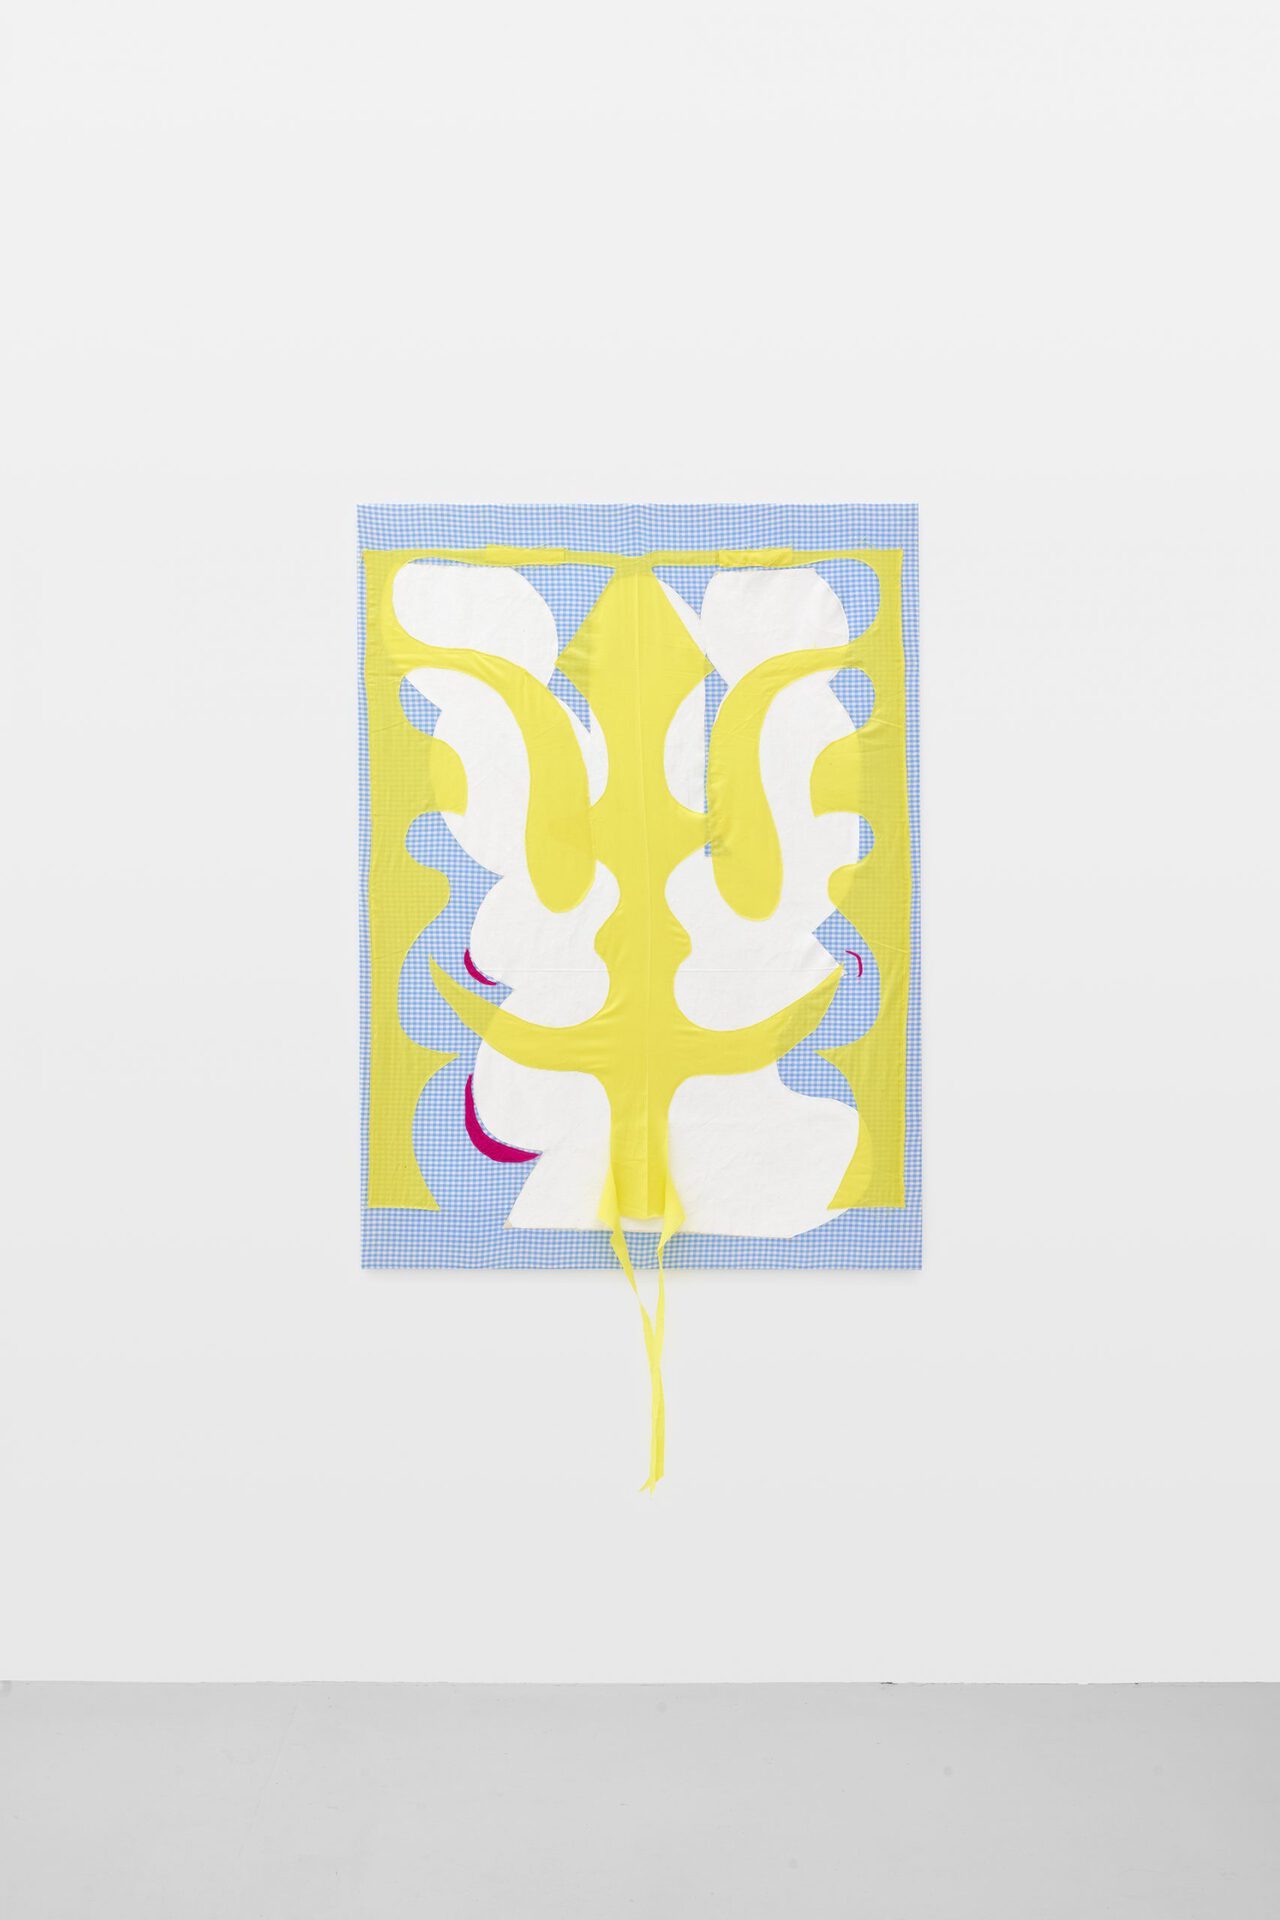 Franca Scholz, Maria, 2022, cotton textile, silk, acrylic paint, canvas, 130 x 95,5 cm.